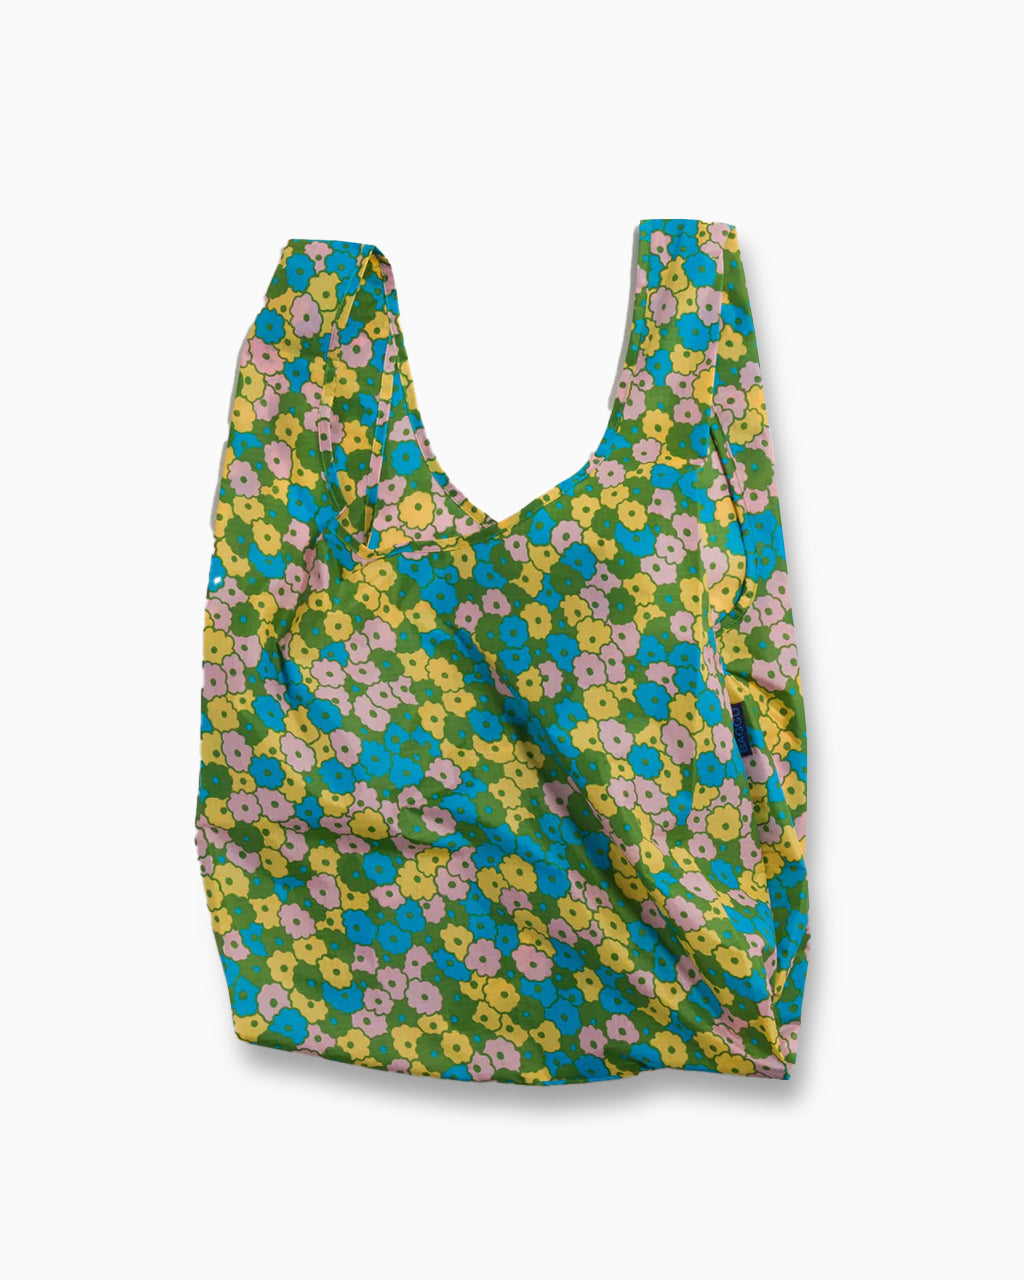 Baggu Standard Reusable Bag: Eco-Friendly, Durable, and